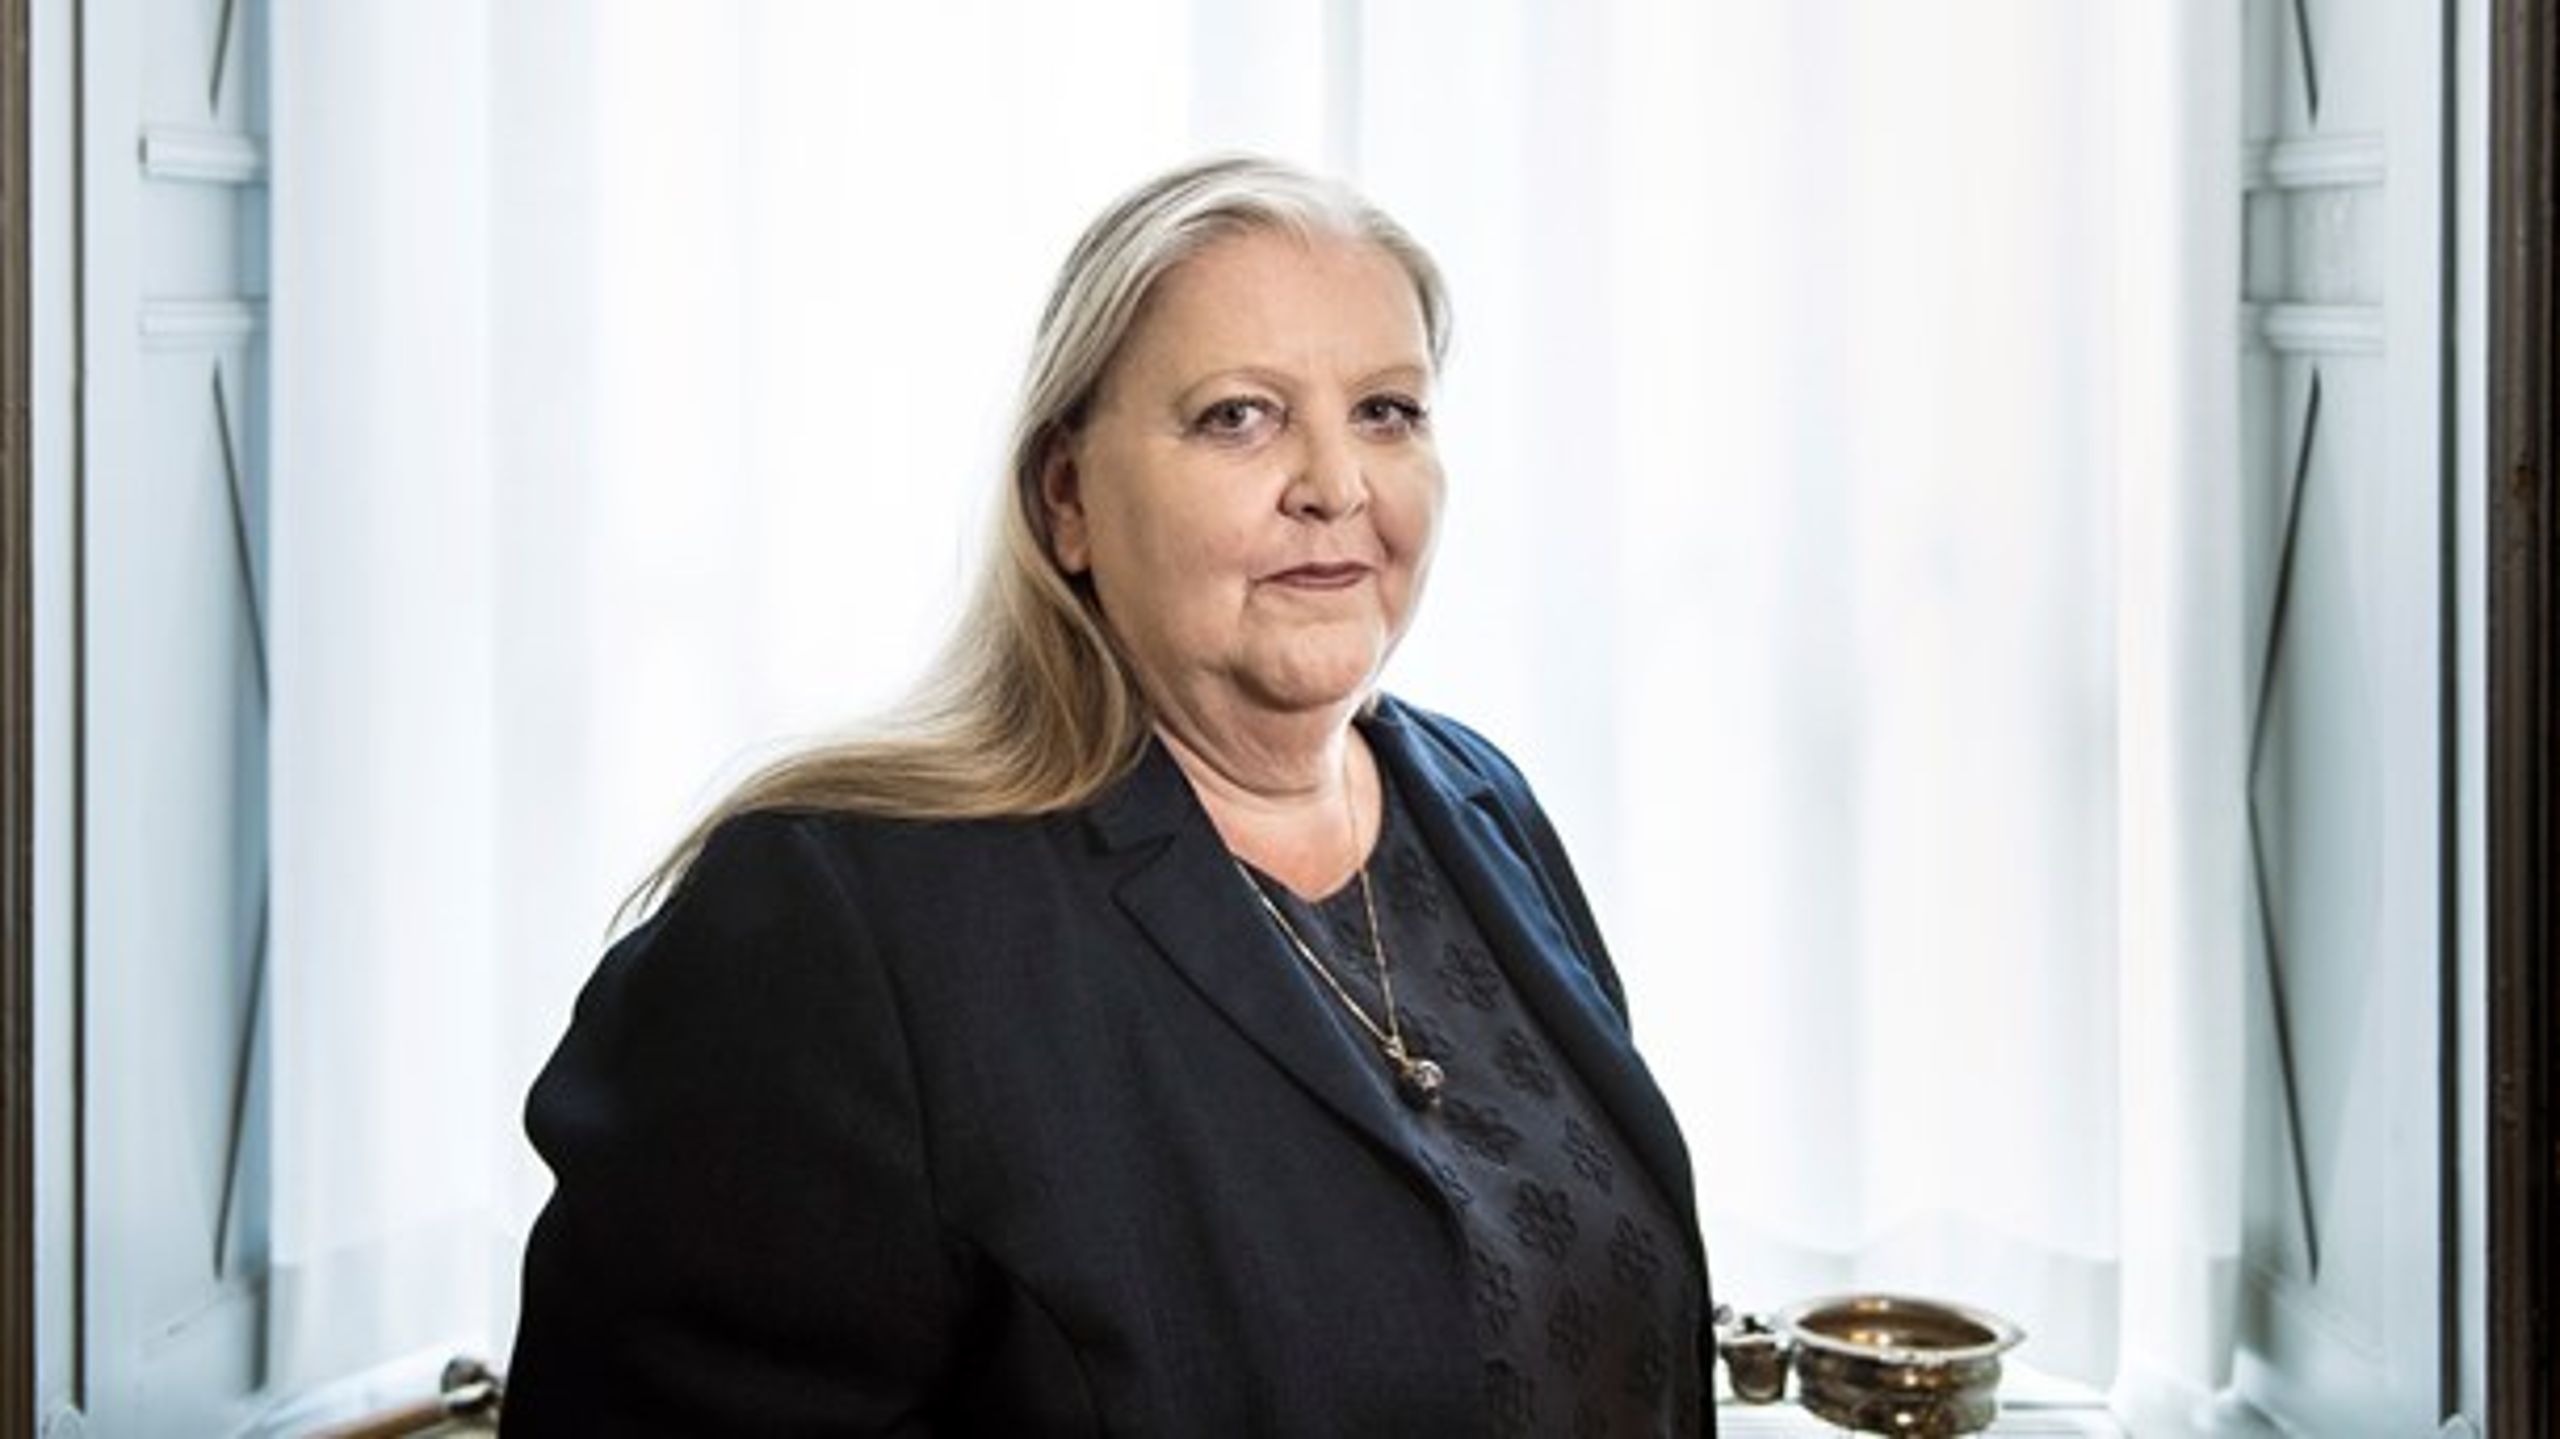 ”Hvis besparelserne fortsætter, står vi i en meget udfordrende situation,” siger bestyrelsesformand Lisbeth Knudsen.